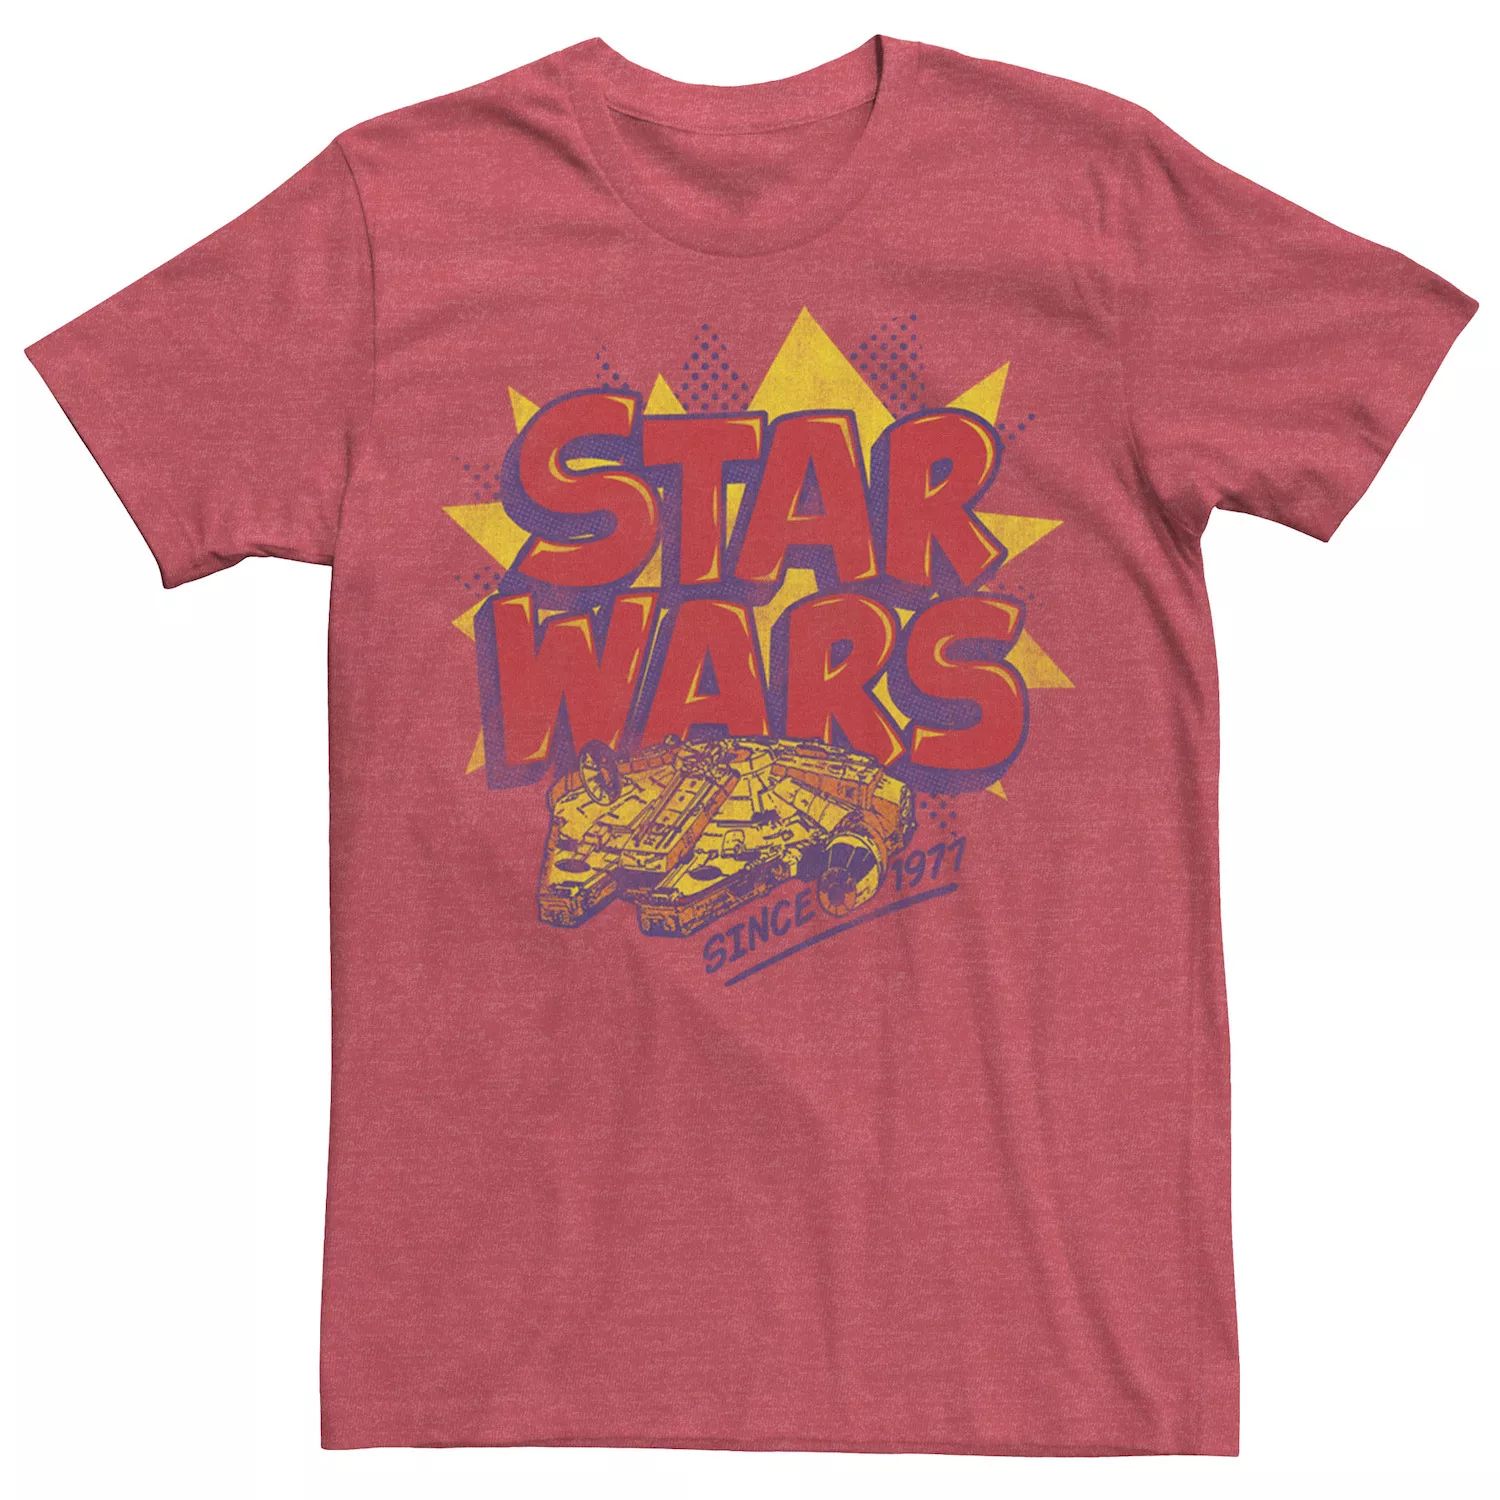 Мужская футболка с логотипом комиксов «Звездные войны: Сокол тысячелетия» Star Wars мужская игрушечная футболка с фигуркой сокол тысячелетия star wars